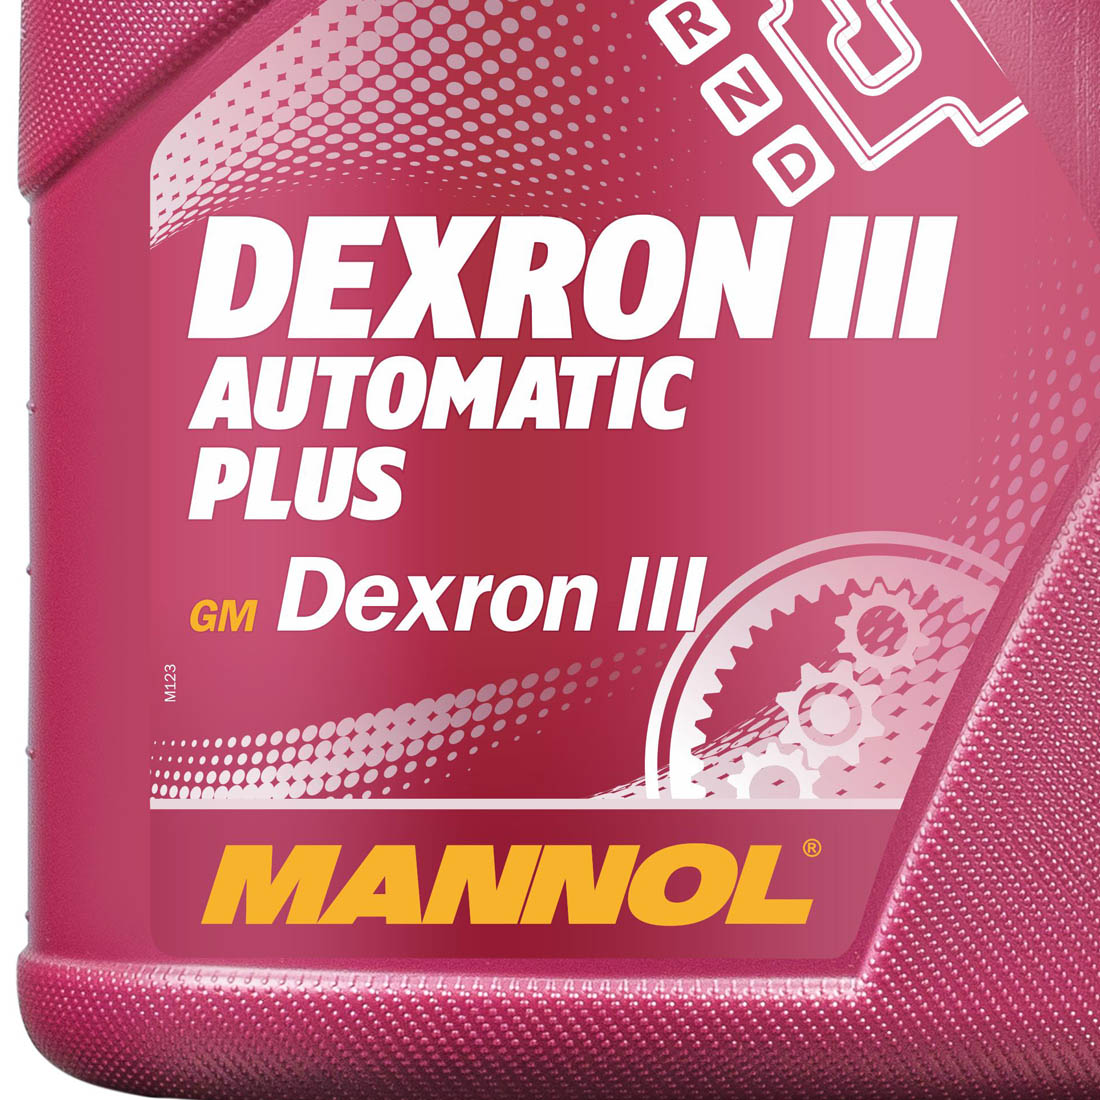 Mannol ATF III. ATF Dexron III. Dexron III цвет. Dexron II цвет. Mannol atf dexron